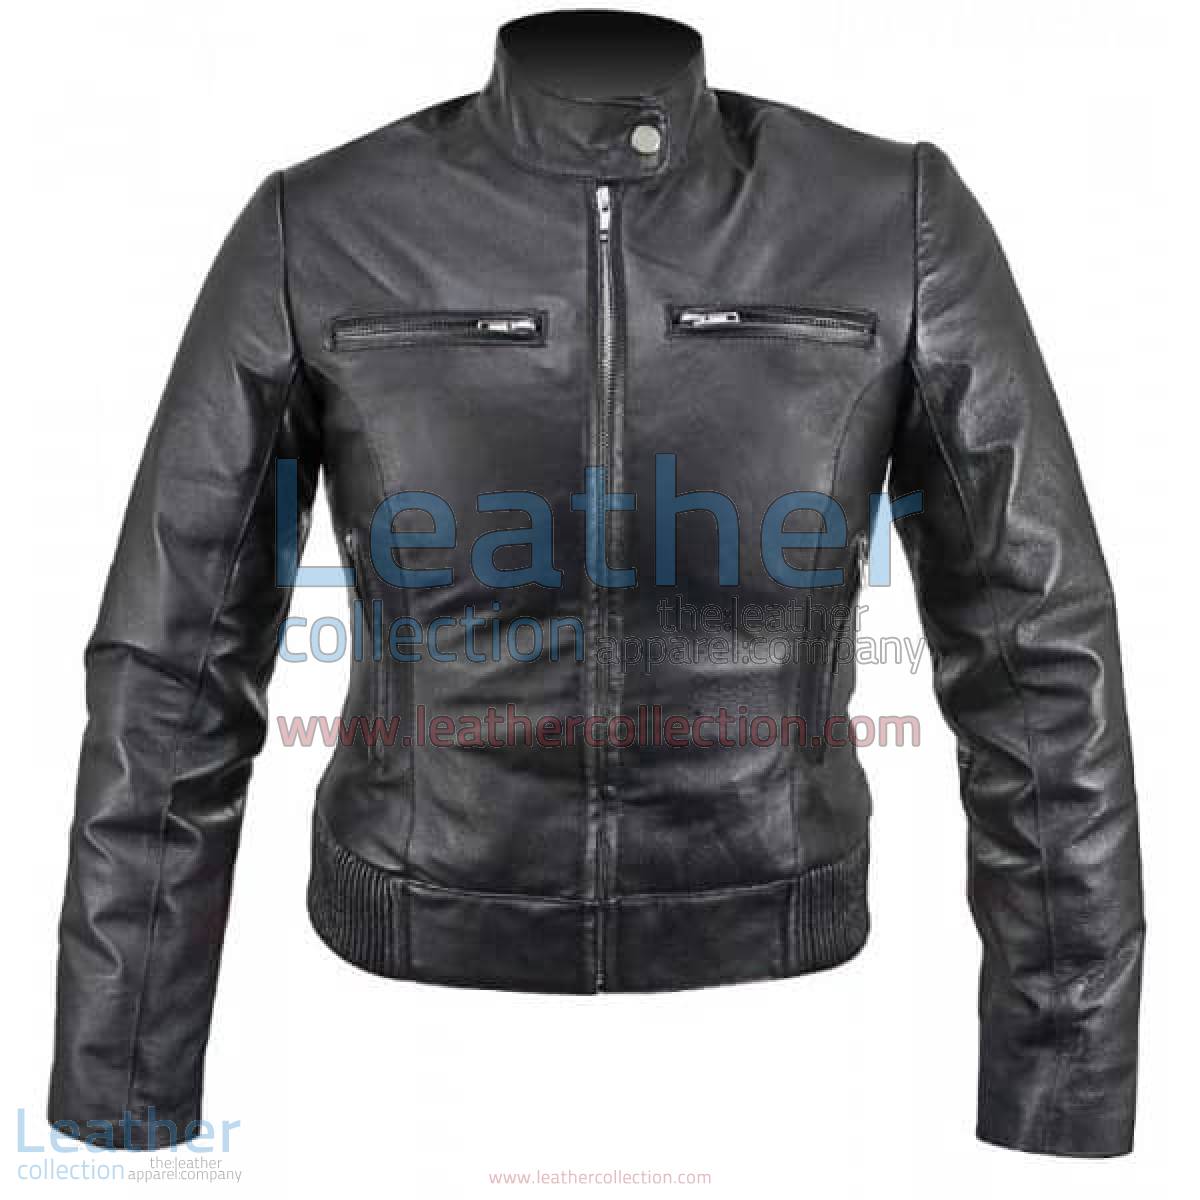 Ladies Waist Length Leather Jacket | ladies leather jacket,waist length jacket